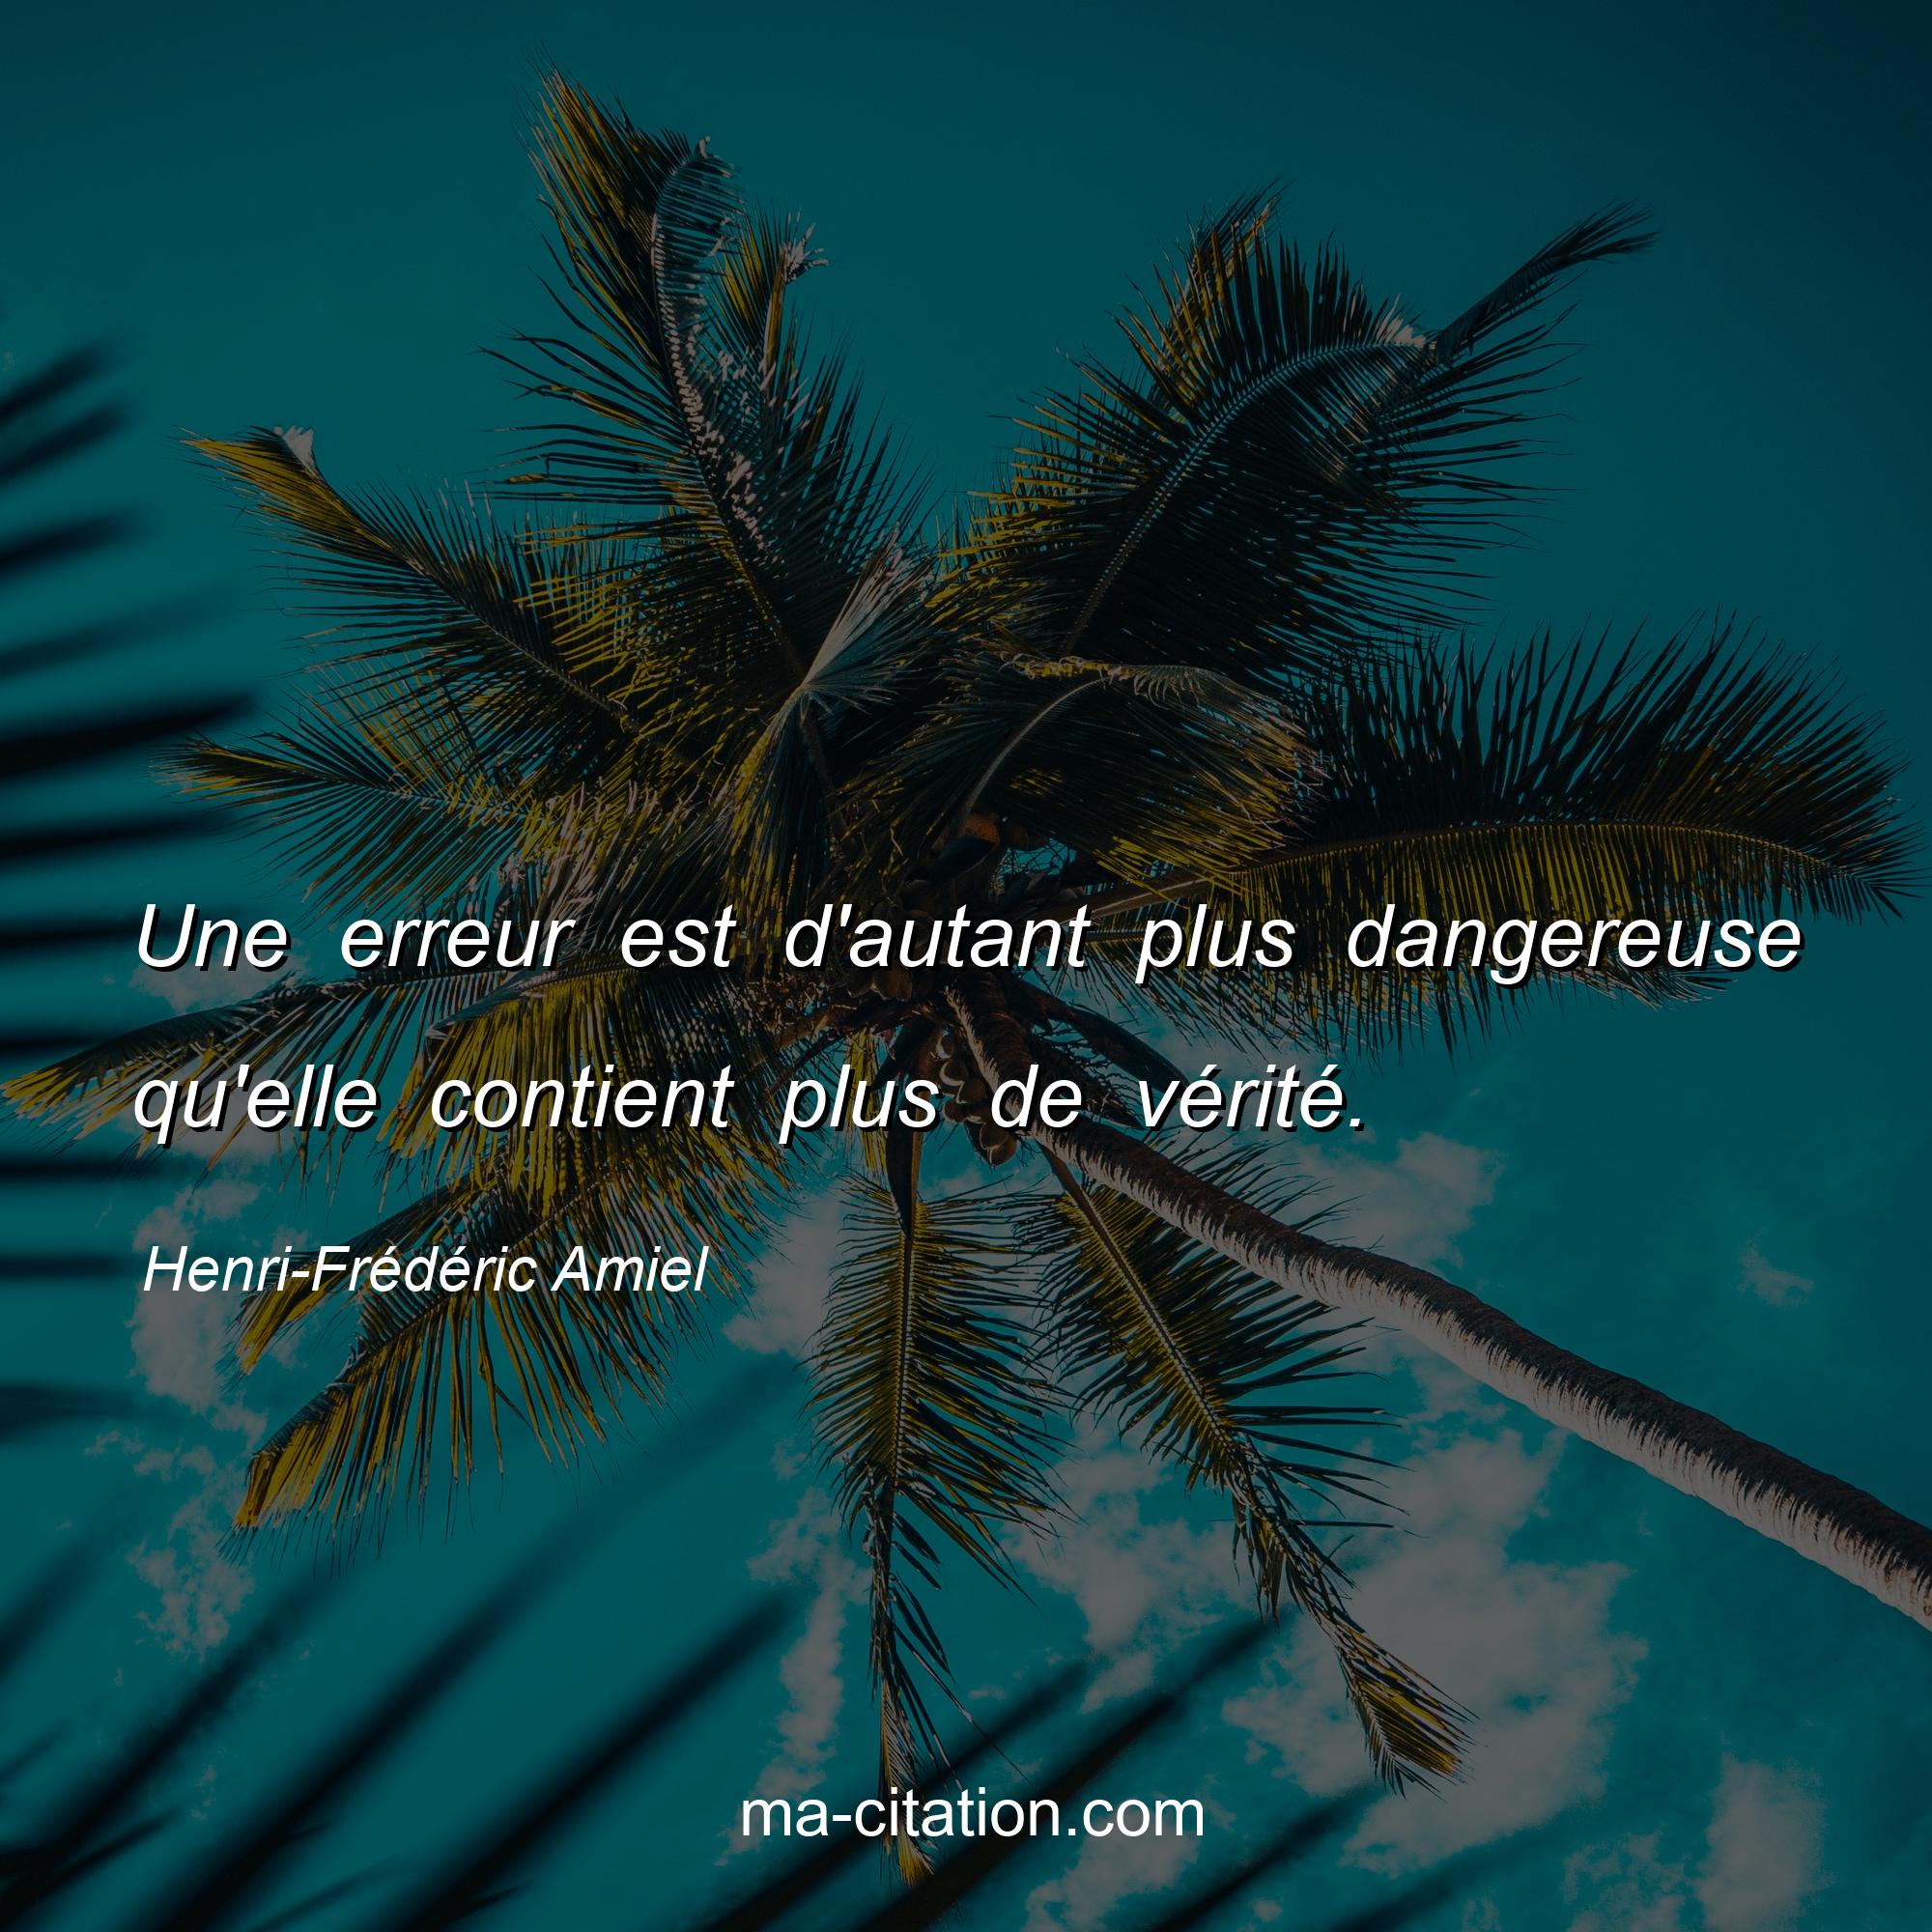 Henri-Frédéric Amiel : Une erreur est d'autant plus dangereuse qu'elle contient plus de vérité.